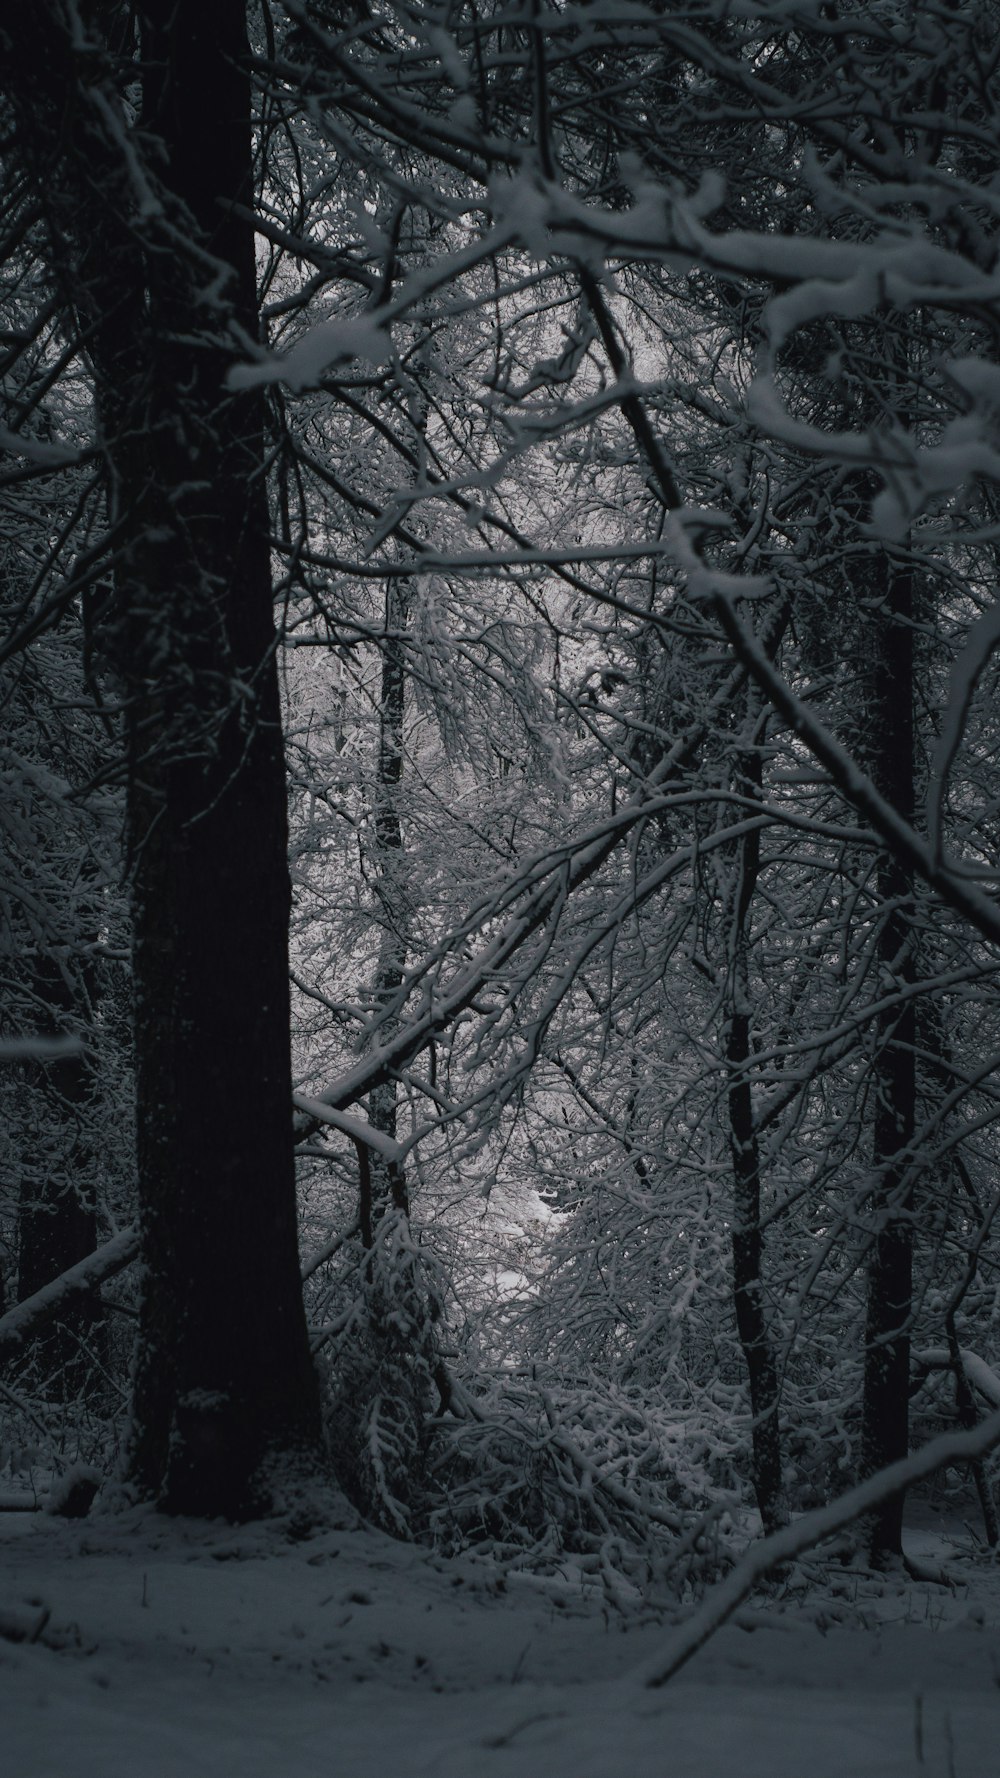 Una foto in bianco e nero di alberi innevati